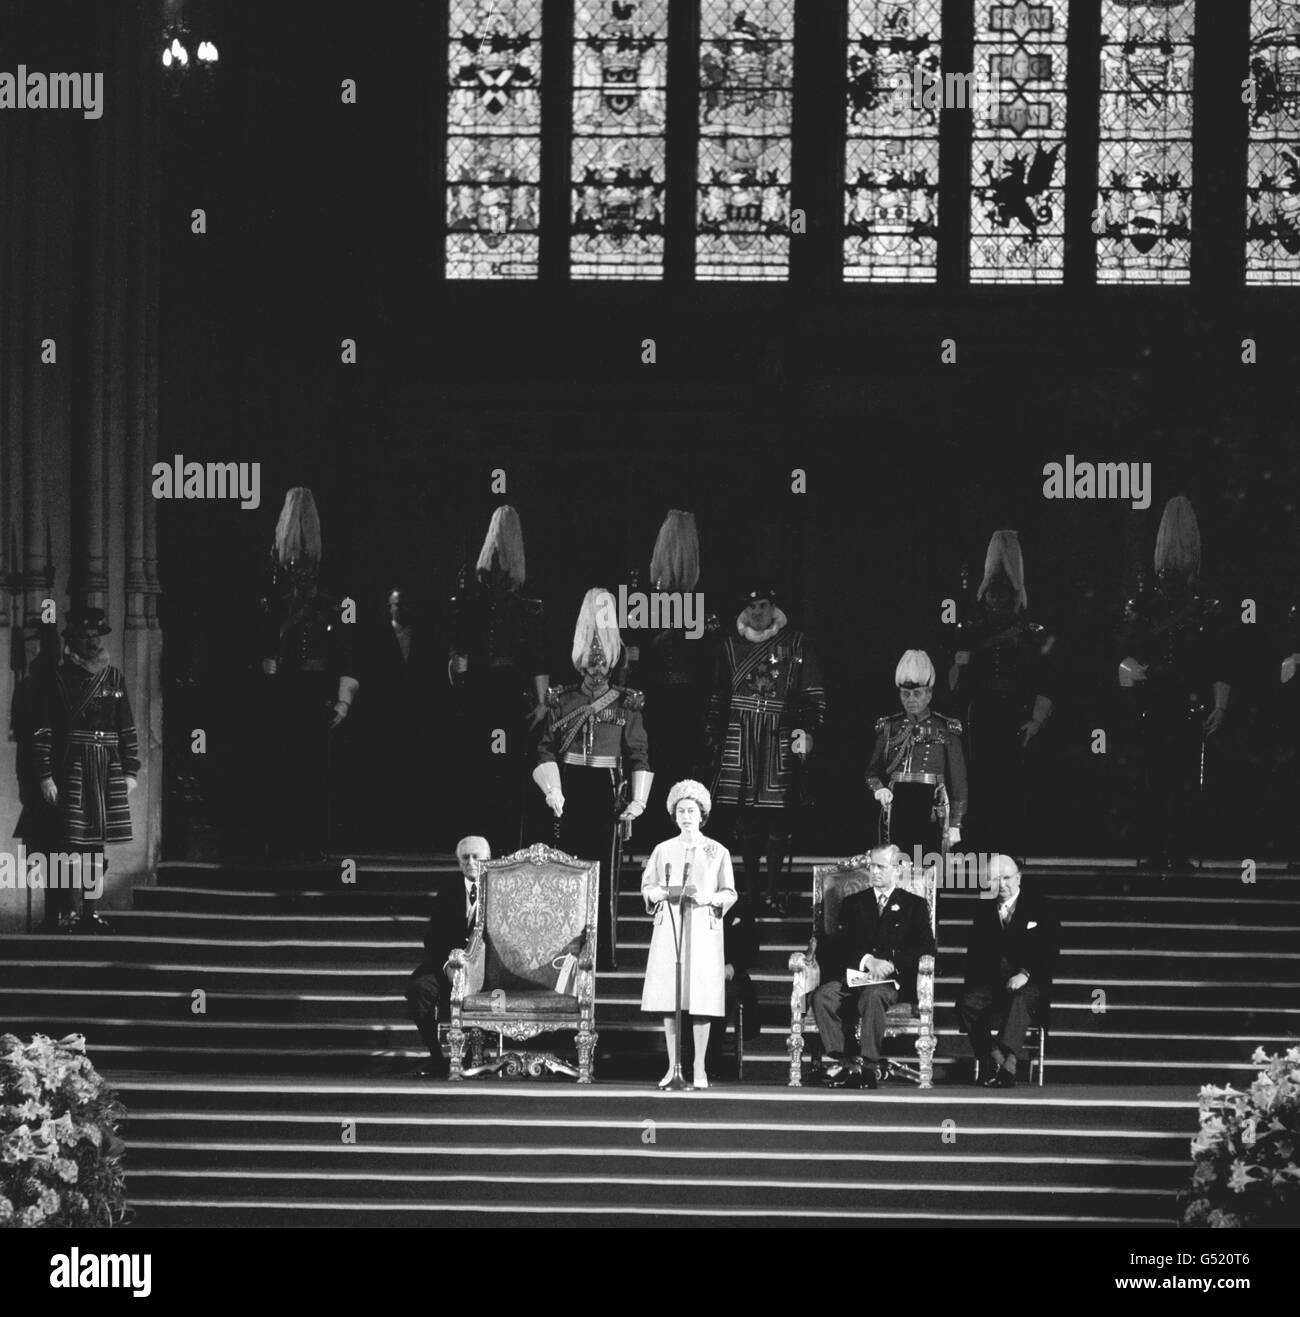 Königin Elizabeth II. Und ihr Mann, der Herzog von Edinburgh, saßen an ihrer Seite und gaben ihre Antwort, nachdem beide Parlamentsgebäude ihre Ansprachen anlässlich des 700. Jahrestages des Parlaments von Simon de Montfort gemacht hatten. Stockfoto